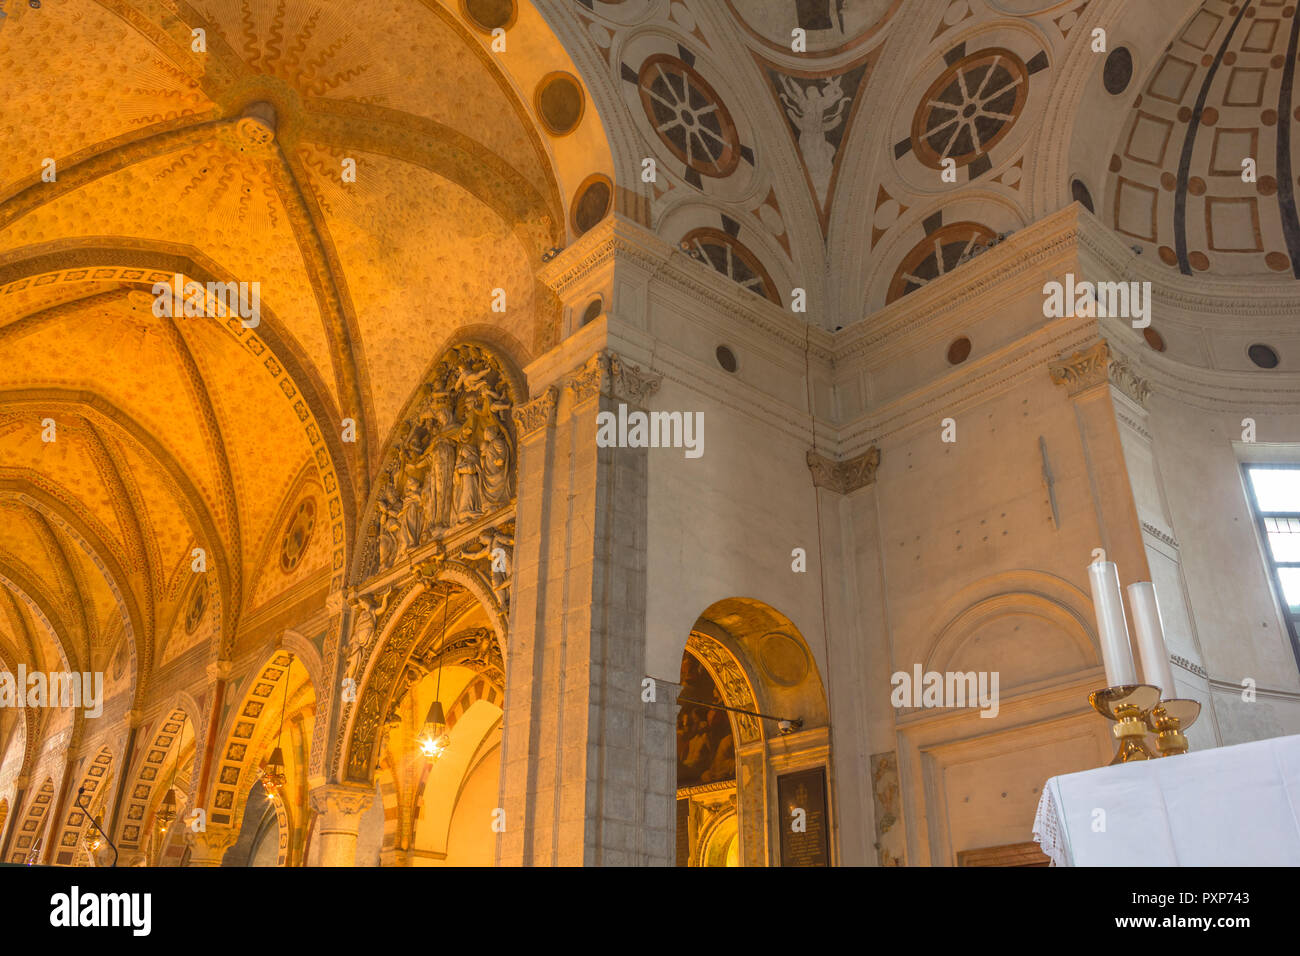 Mailand, Italien - 15. November 2016: Interne der Hauptapsis Dach der Italienischen Kirche Santa Maria delle Grazie. Berühmt für die Bewirtung des Letzten Abendmahls Gemälde von Leonardo Da Vinci. rightpoint. Stockfoto